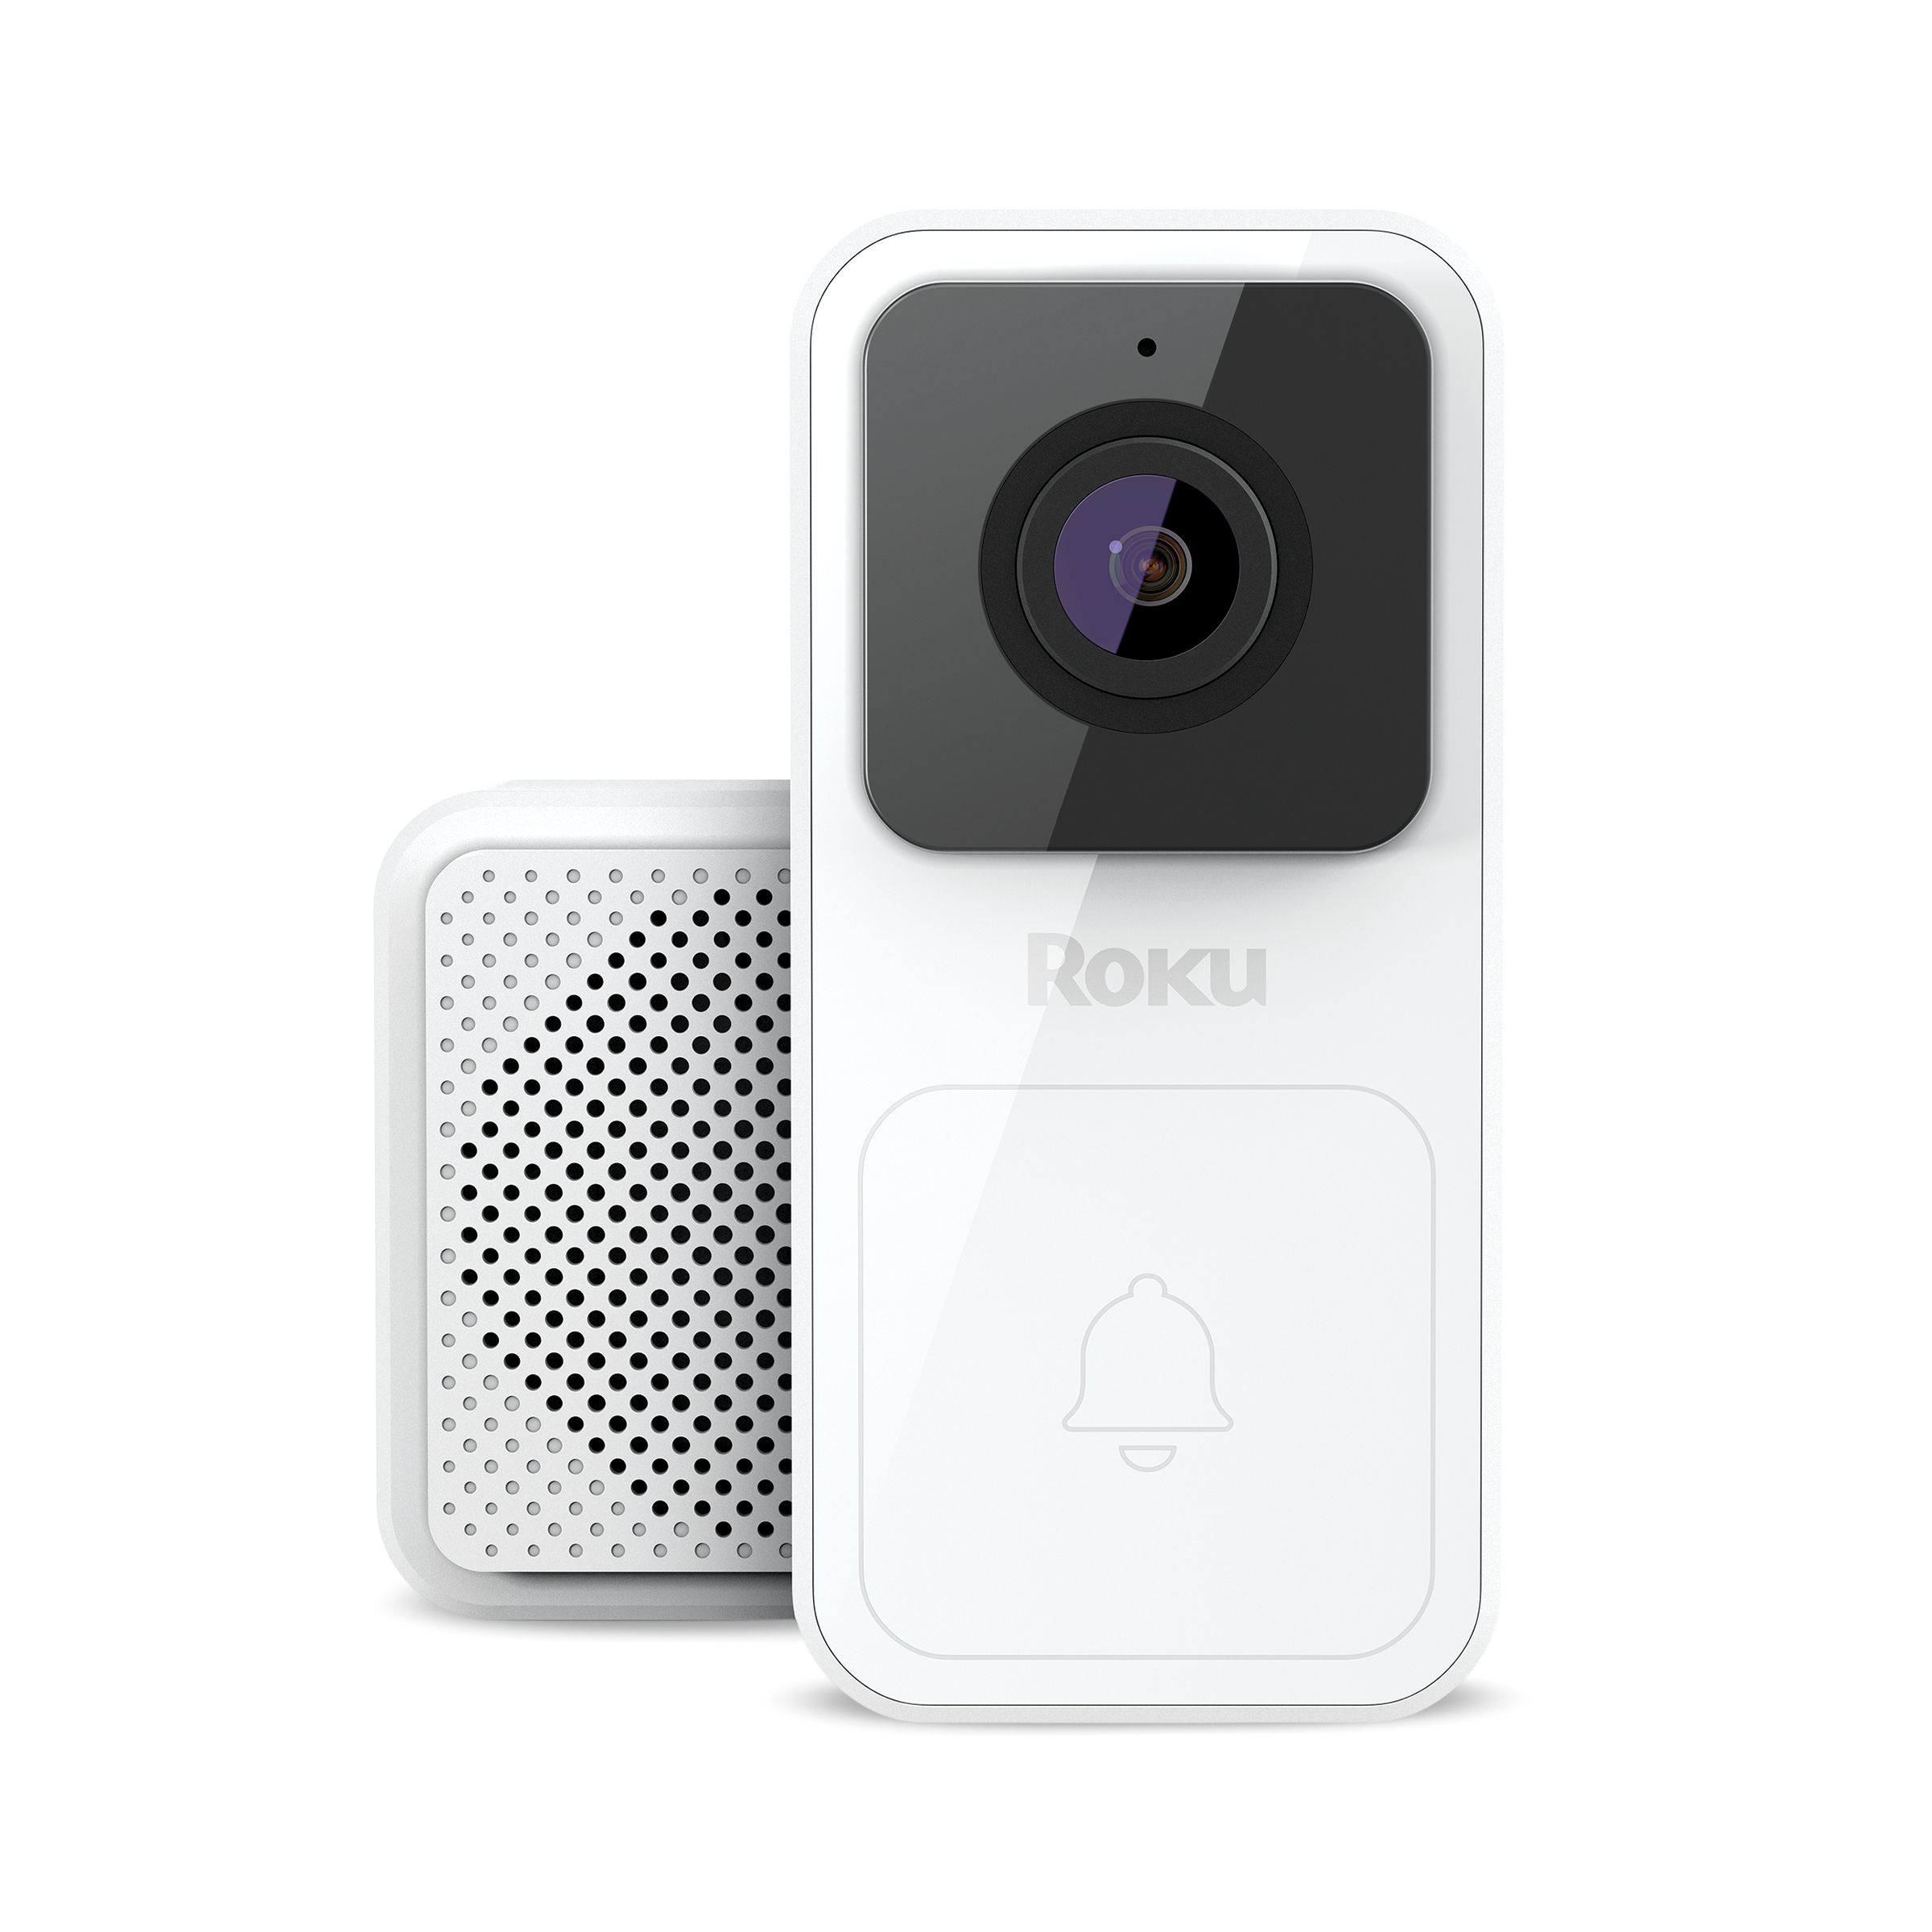 Roku Video Doorbell